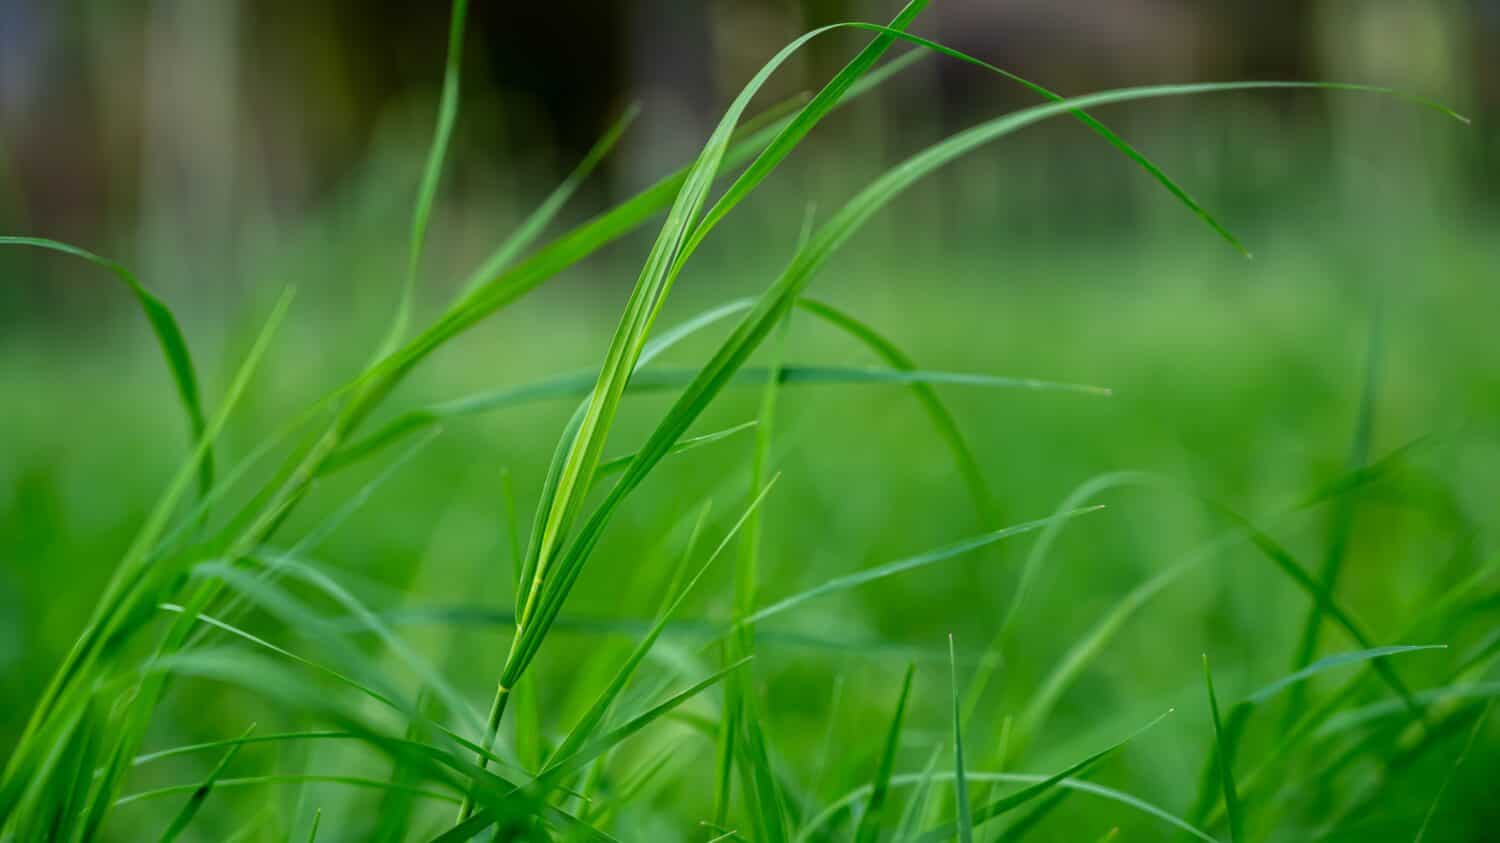 Il Cynodon dactylon, noto come erba delle Bermuda, doab indiano, arugampul, wiregrass e scutch grass, è un'erba trovata in tutto il mondo.